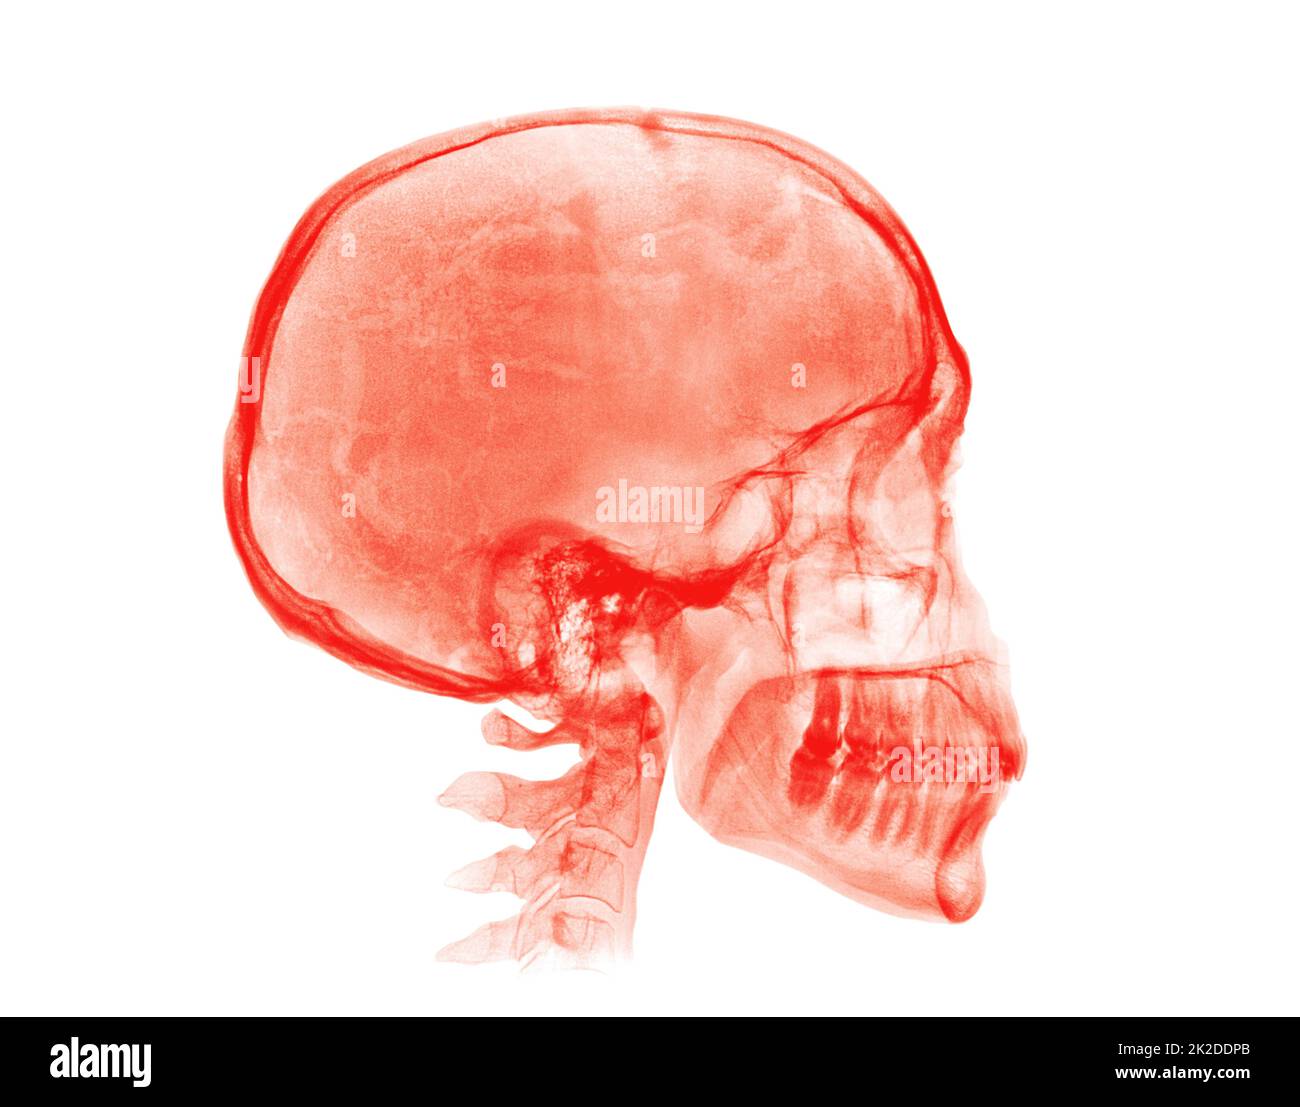 Cranio umano. Immagine radiografica rossa su sfondo bianco Foto Stock